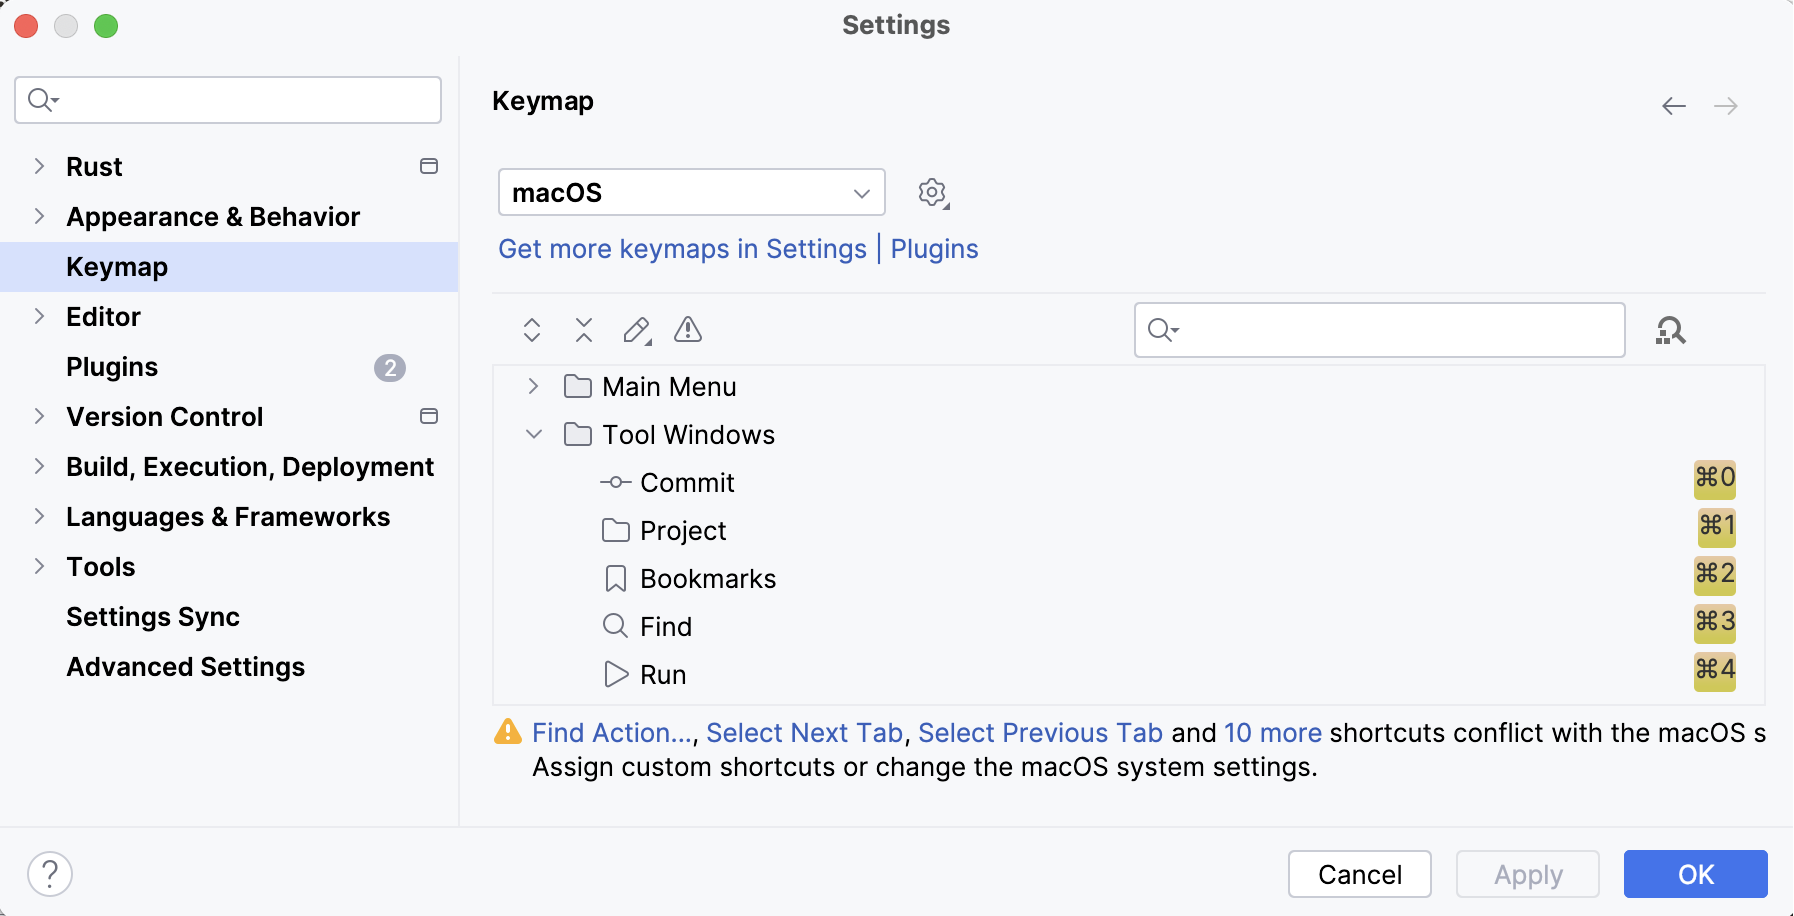 Keymap settings